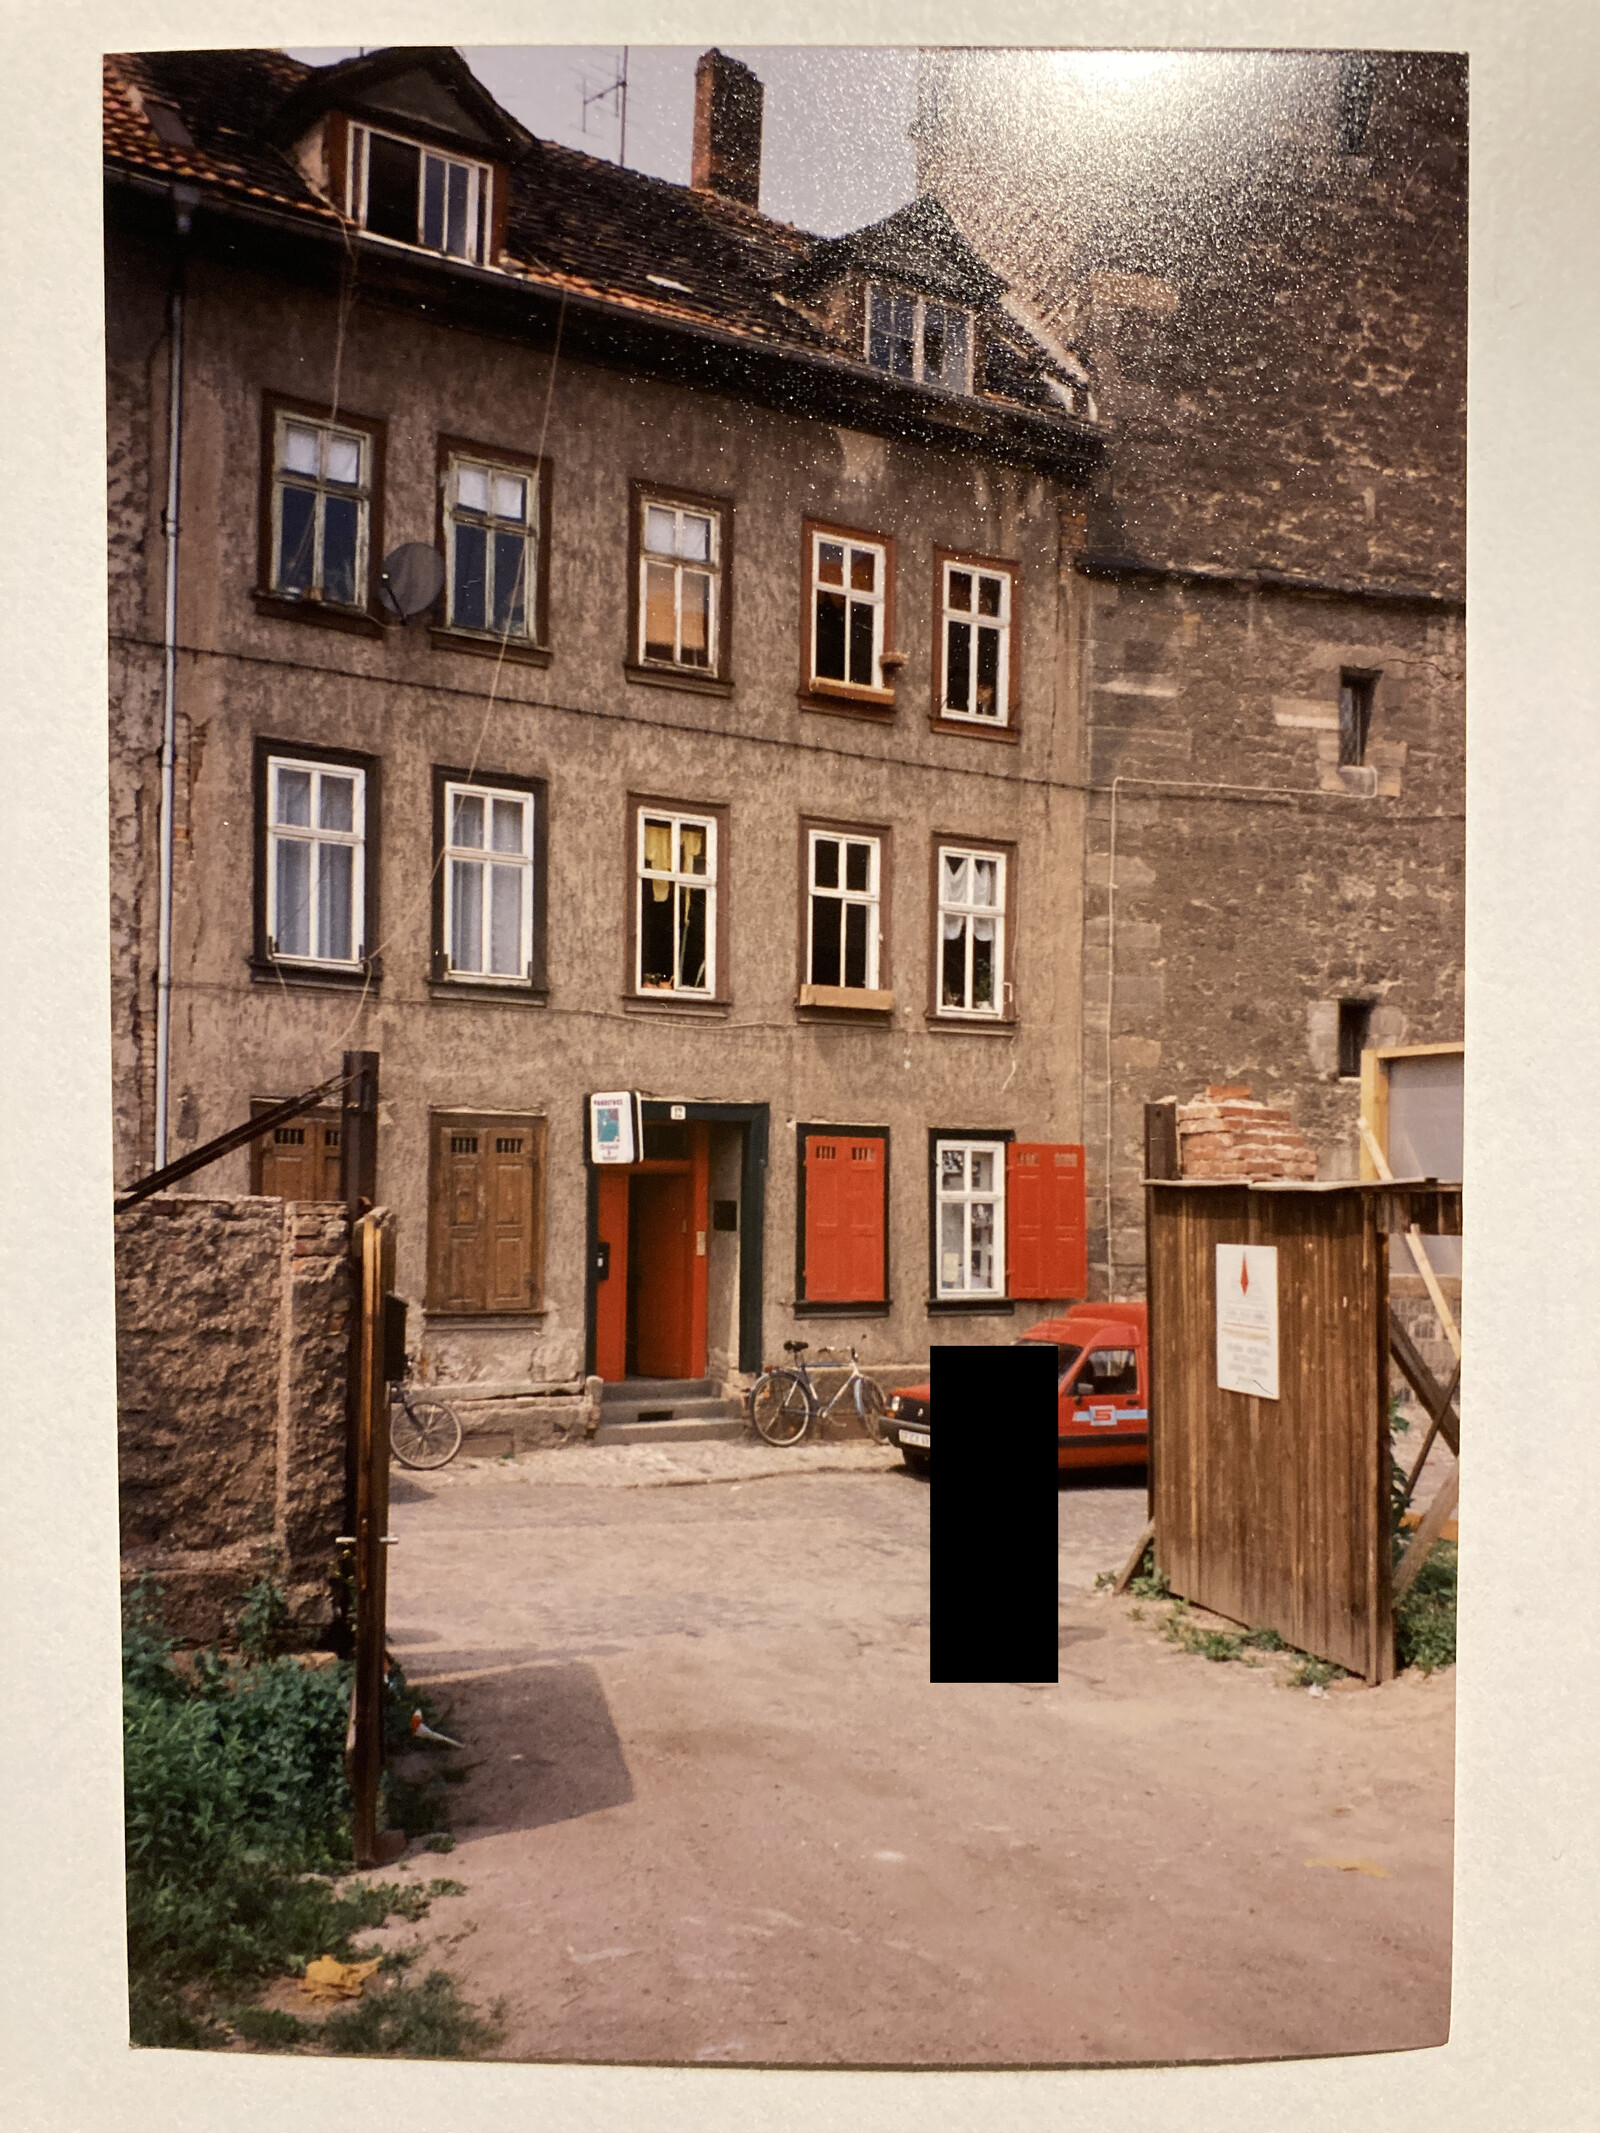 Wohnung in Erfurt 1992/93, Bild: Martin Kohlhaas